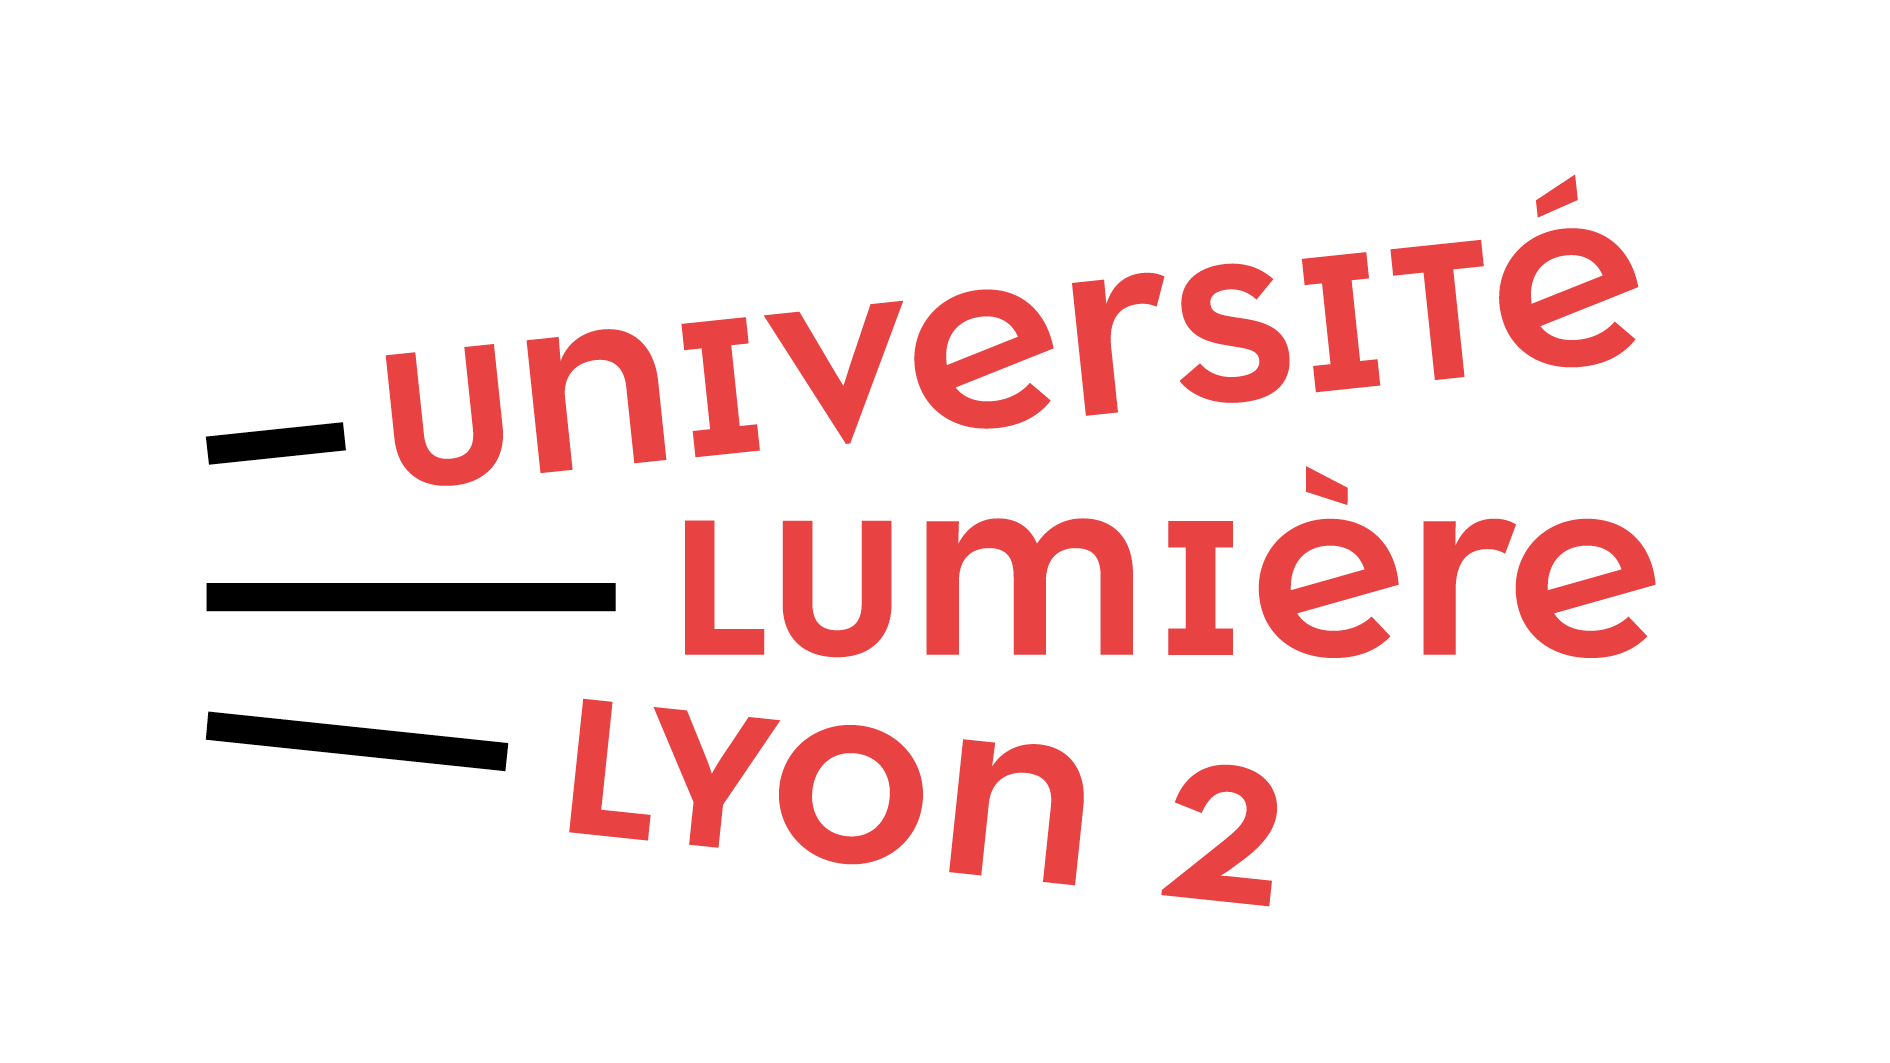 universite_lumiere_lyon2_NR1_copie.png